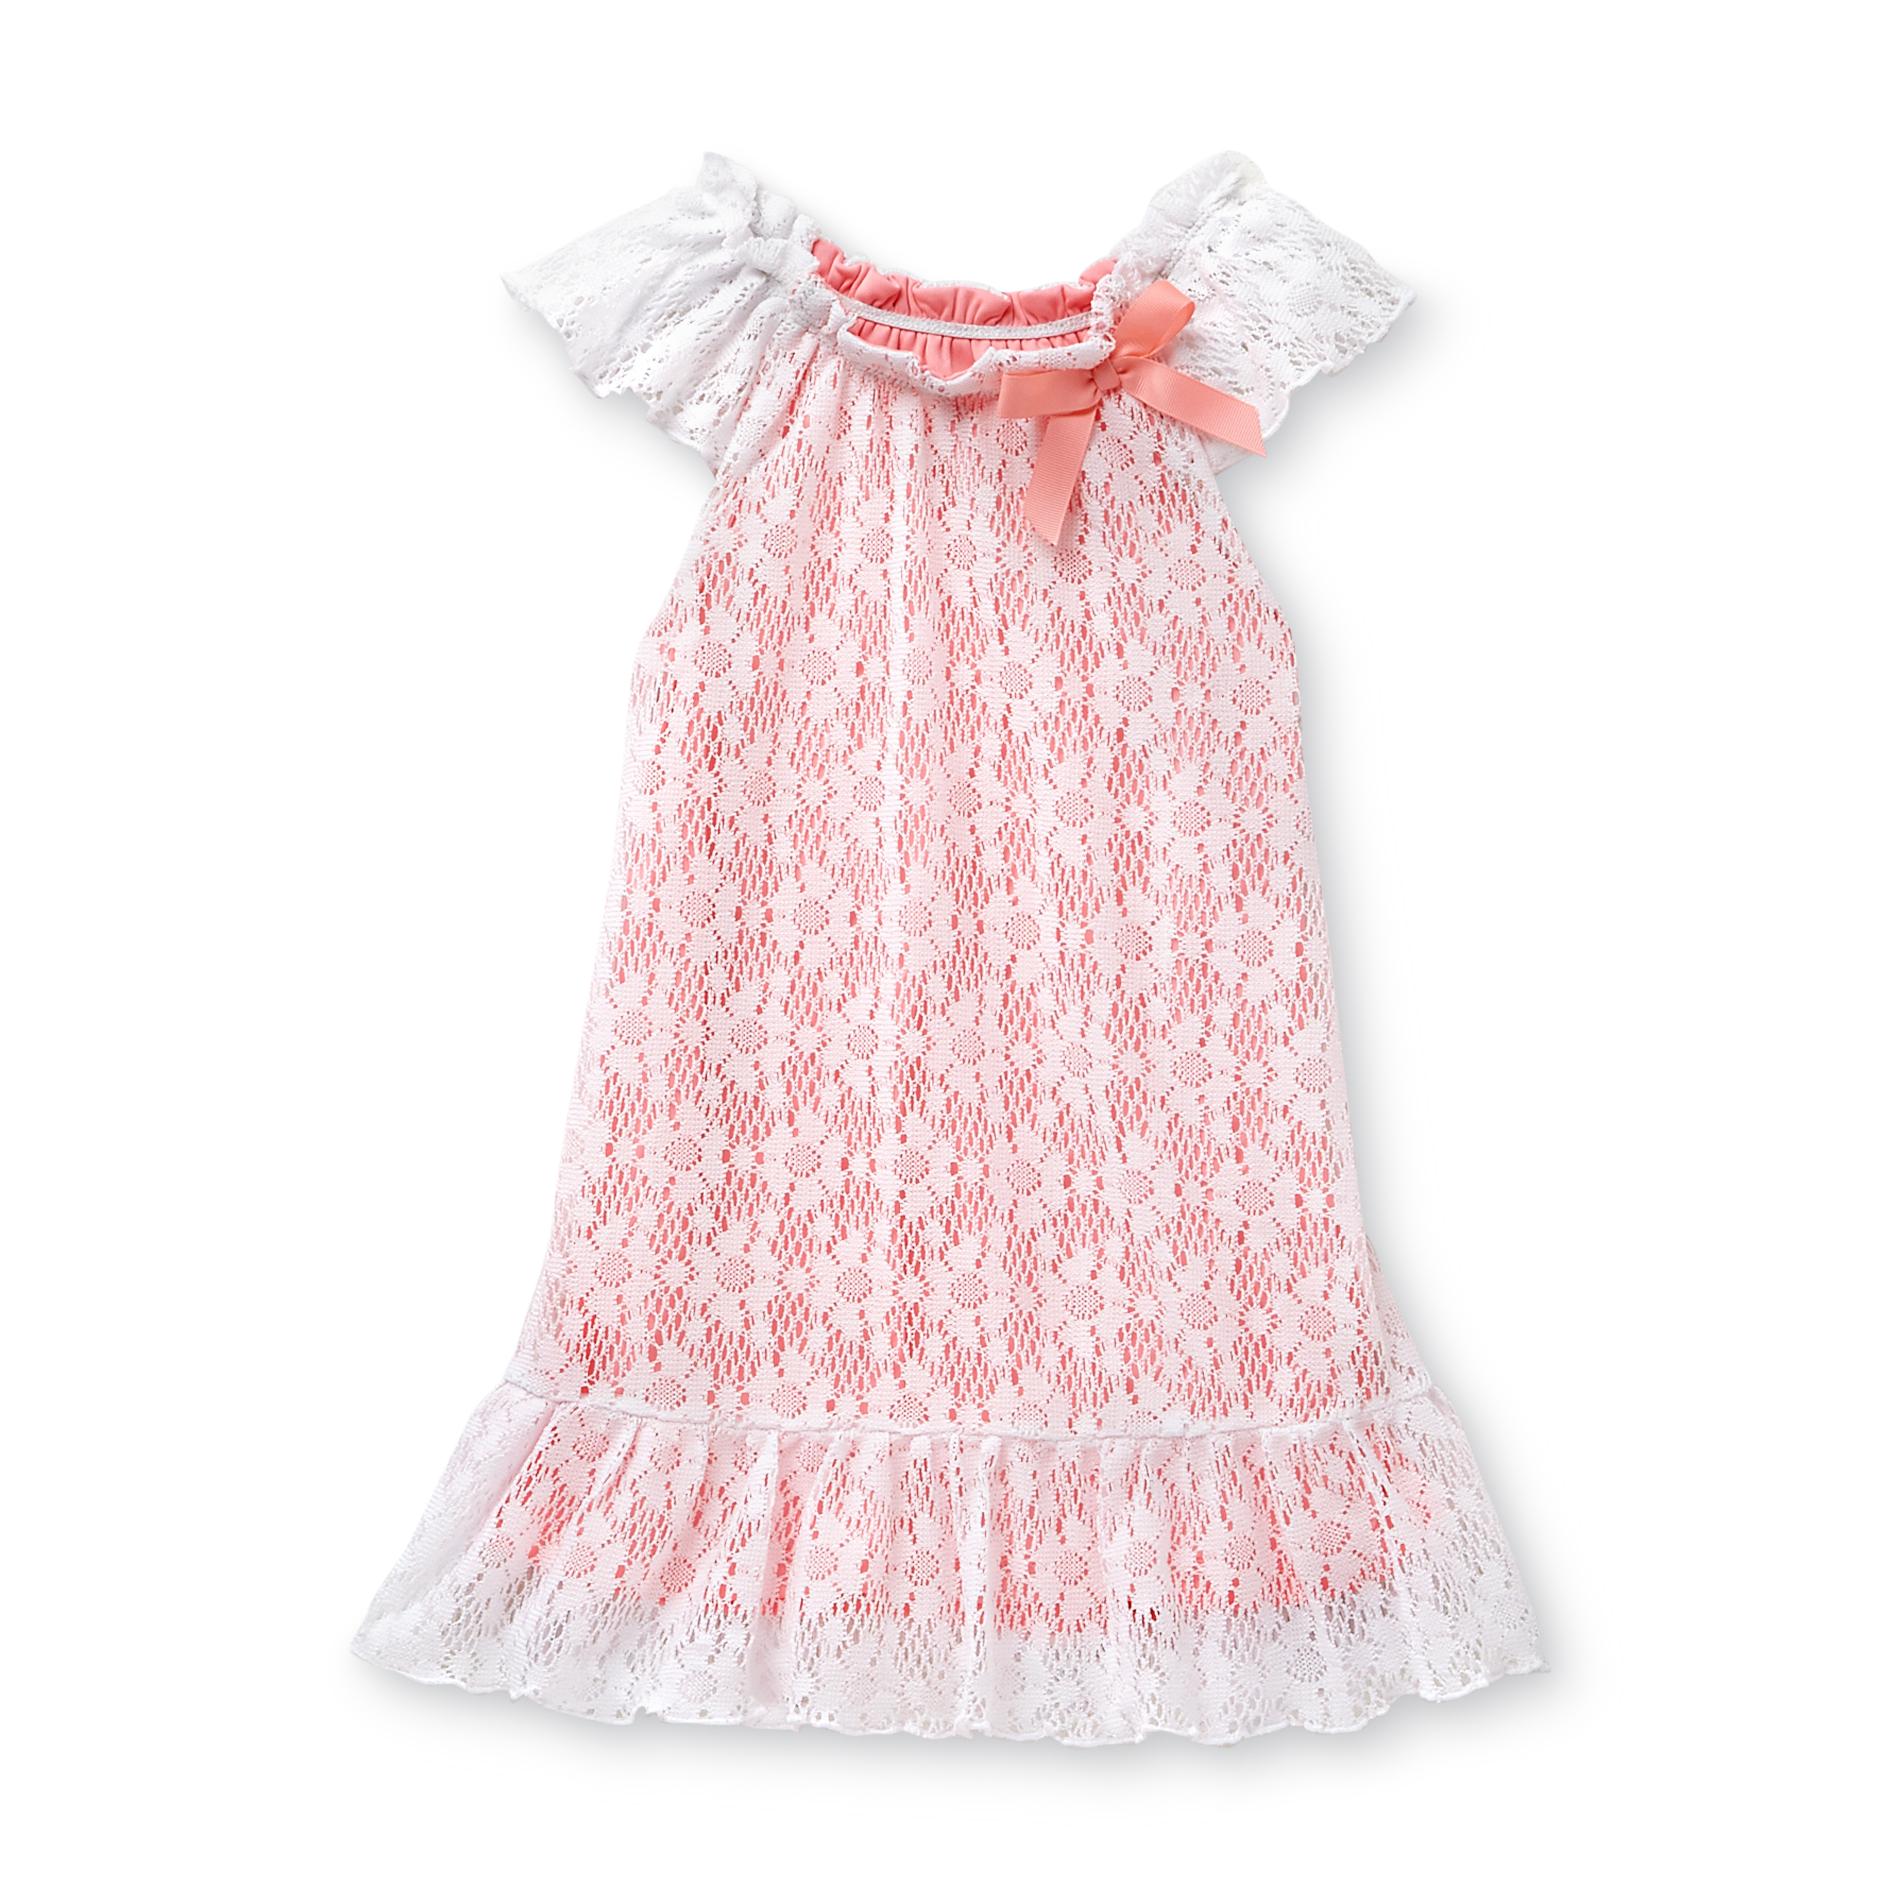 WonderKids Infant & Toddler Girl's Crochet Dress